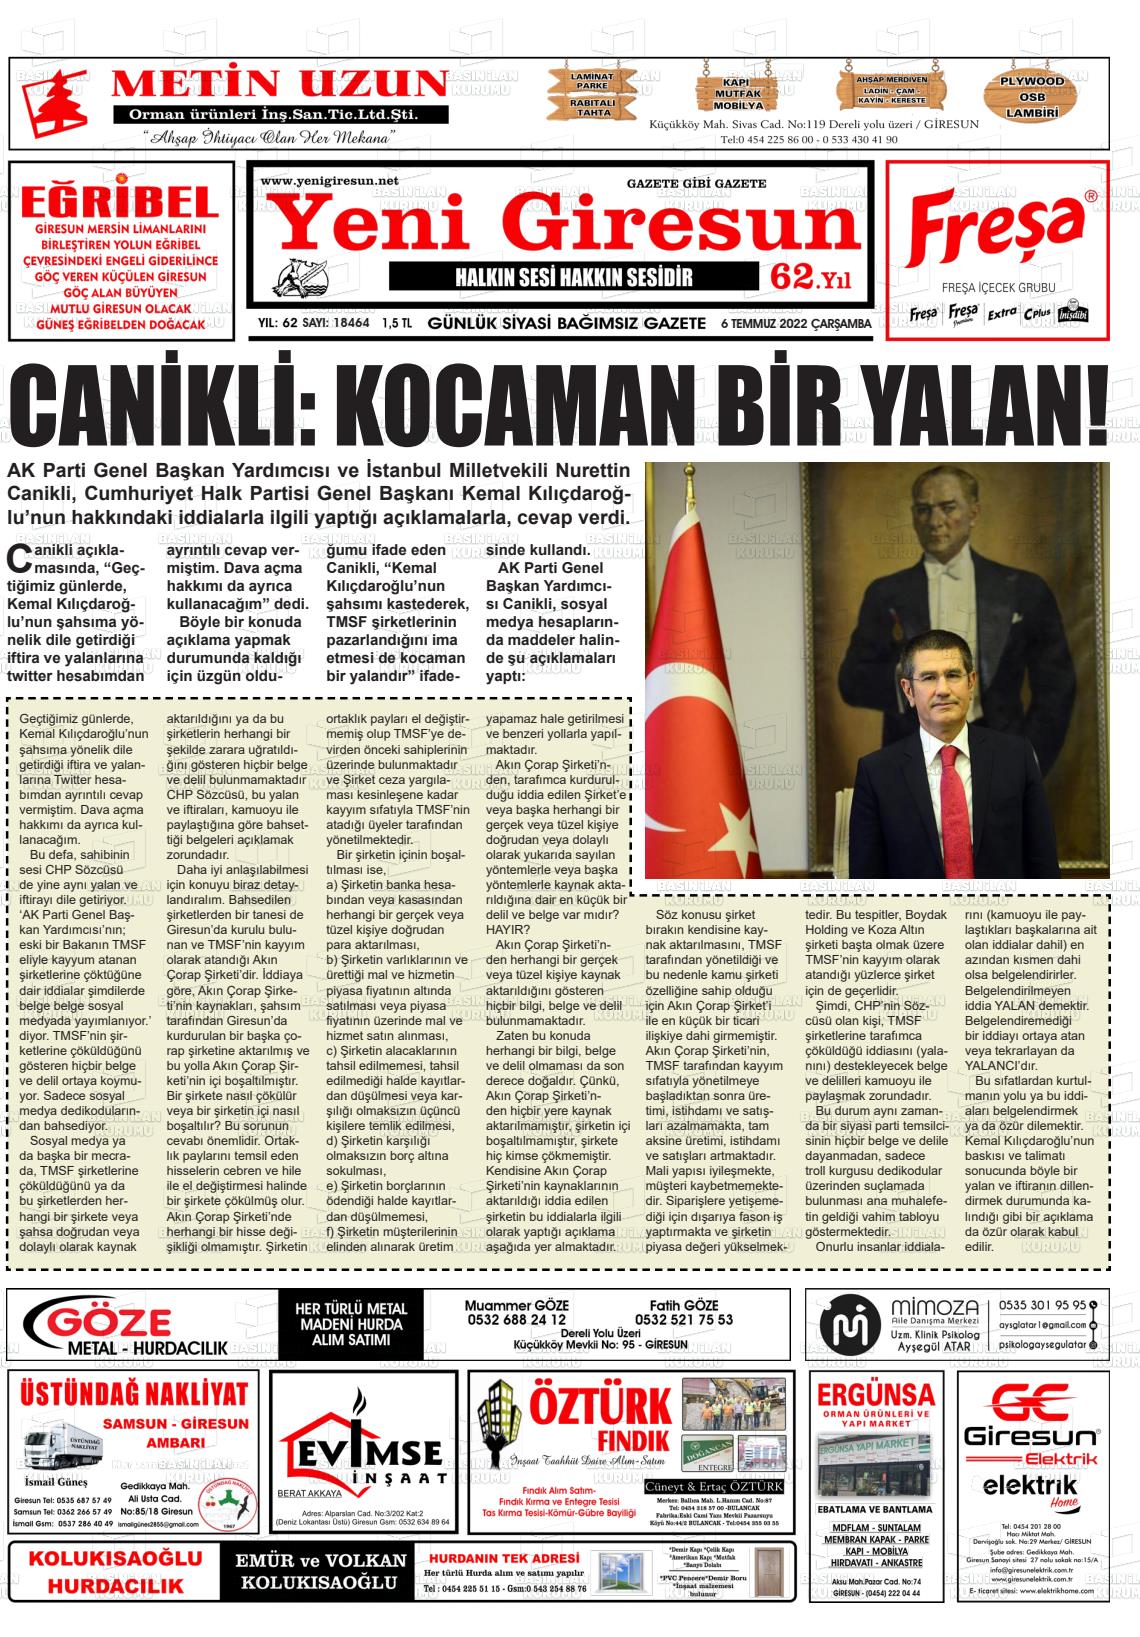 06 Temmuz 2022 Yeni Giresun Gazete Manşeti